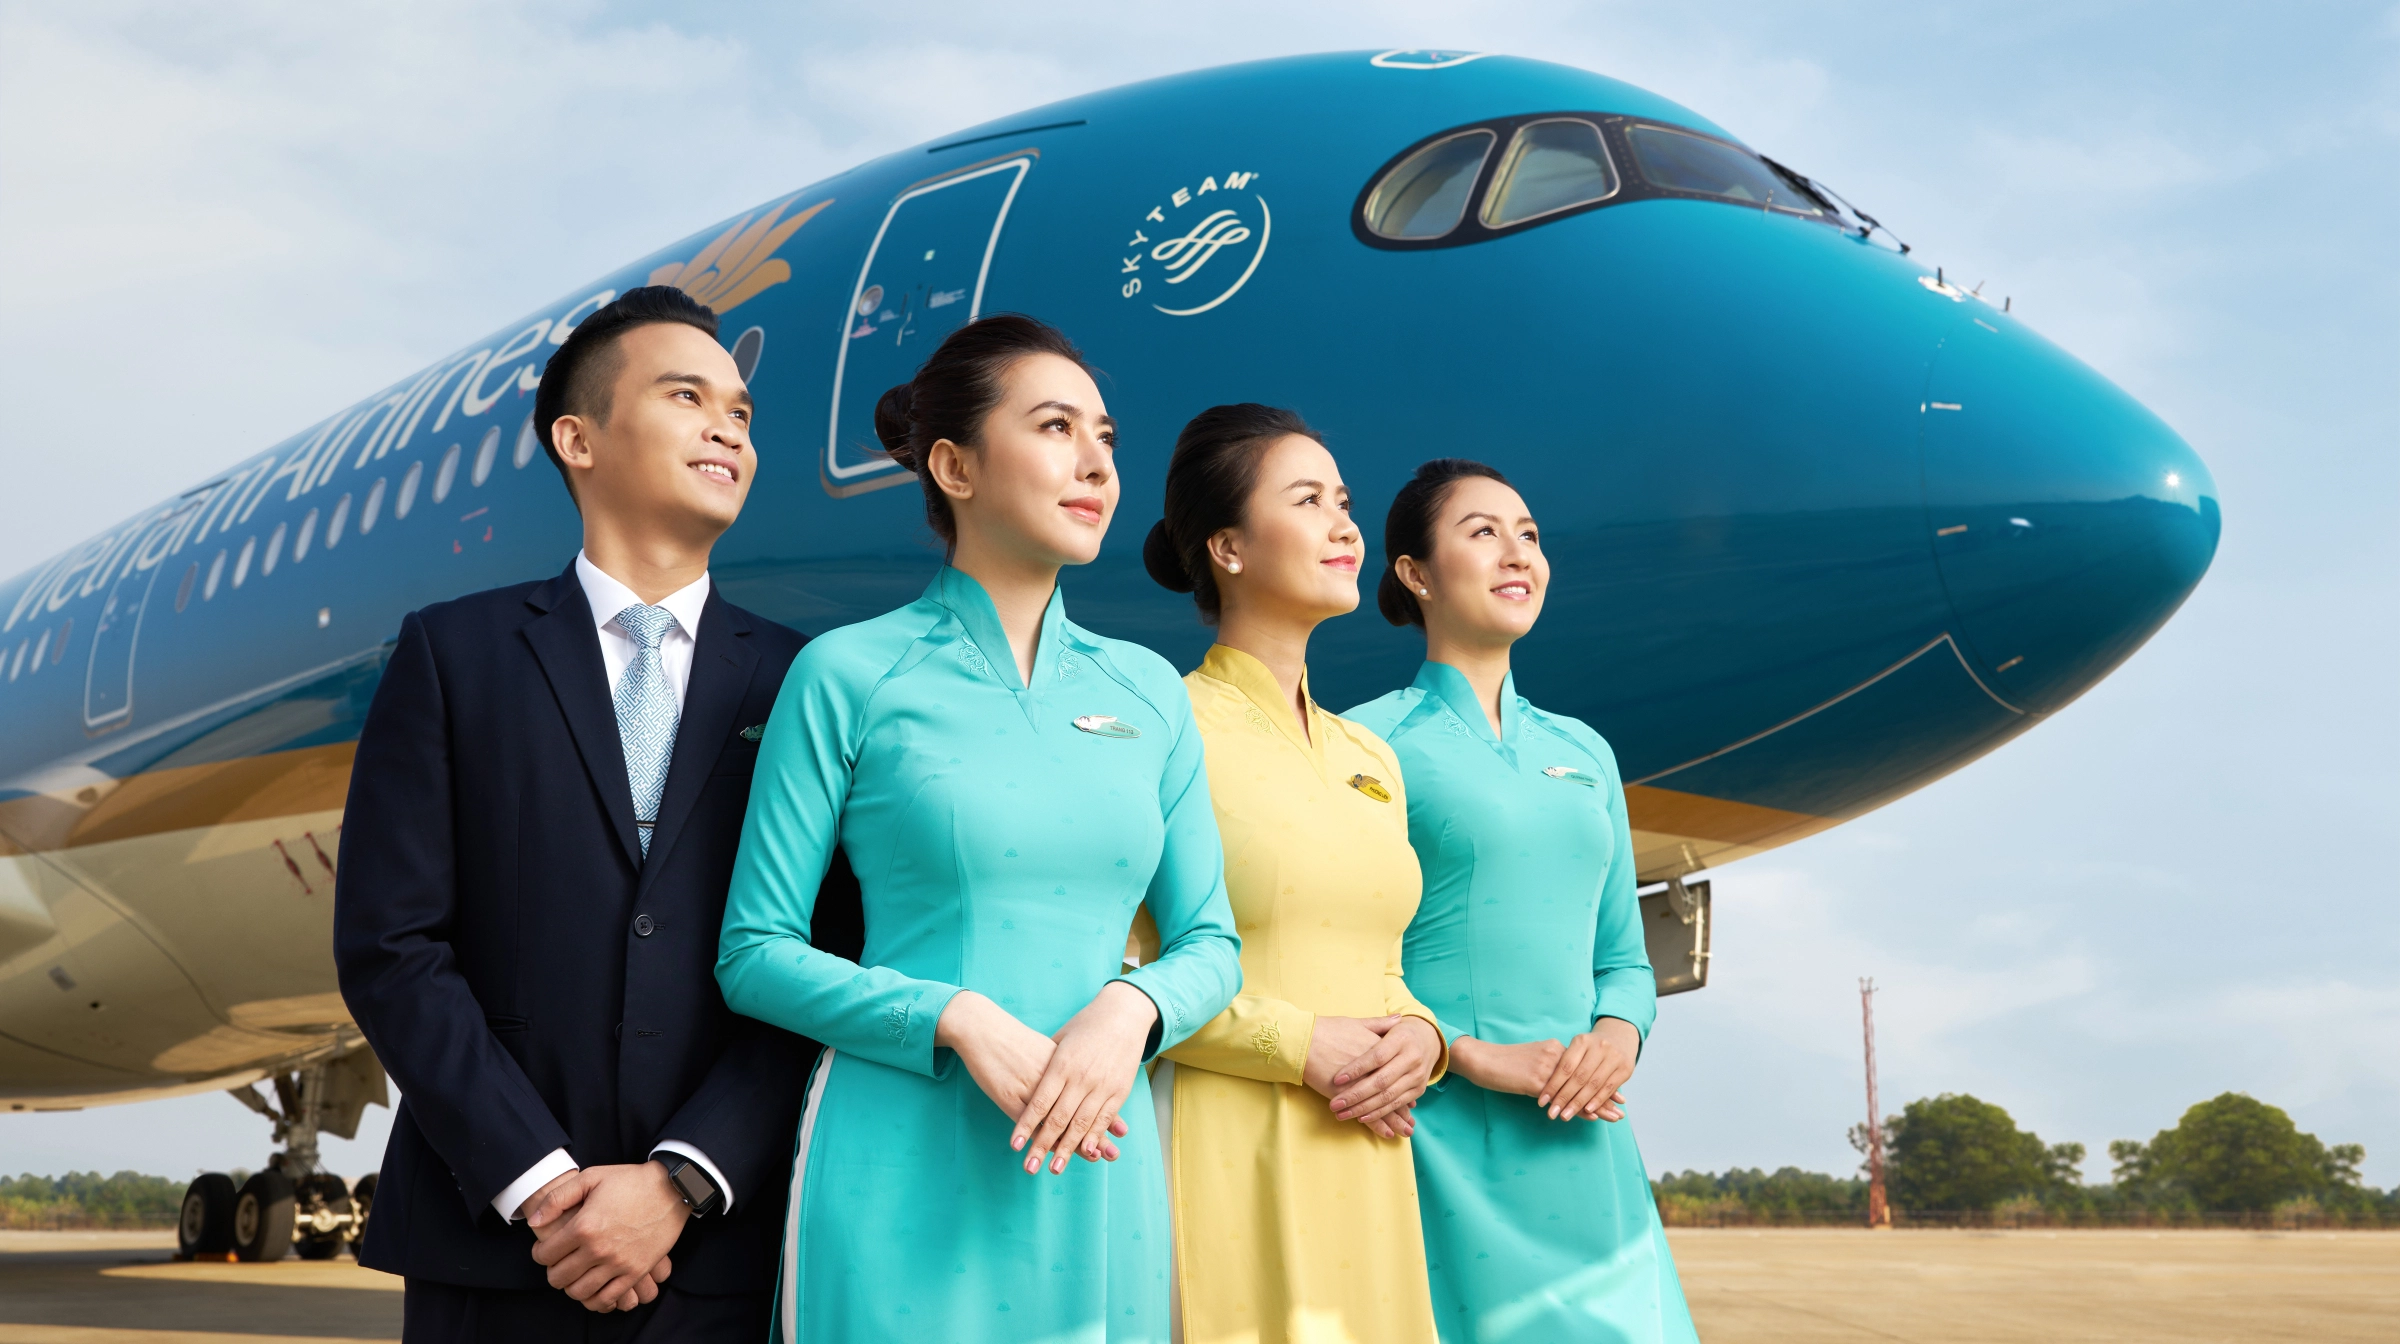 Khuyến mãi mới nhất của Vietnam Airlines khi mua vé Economy